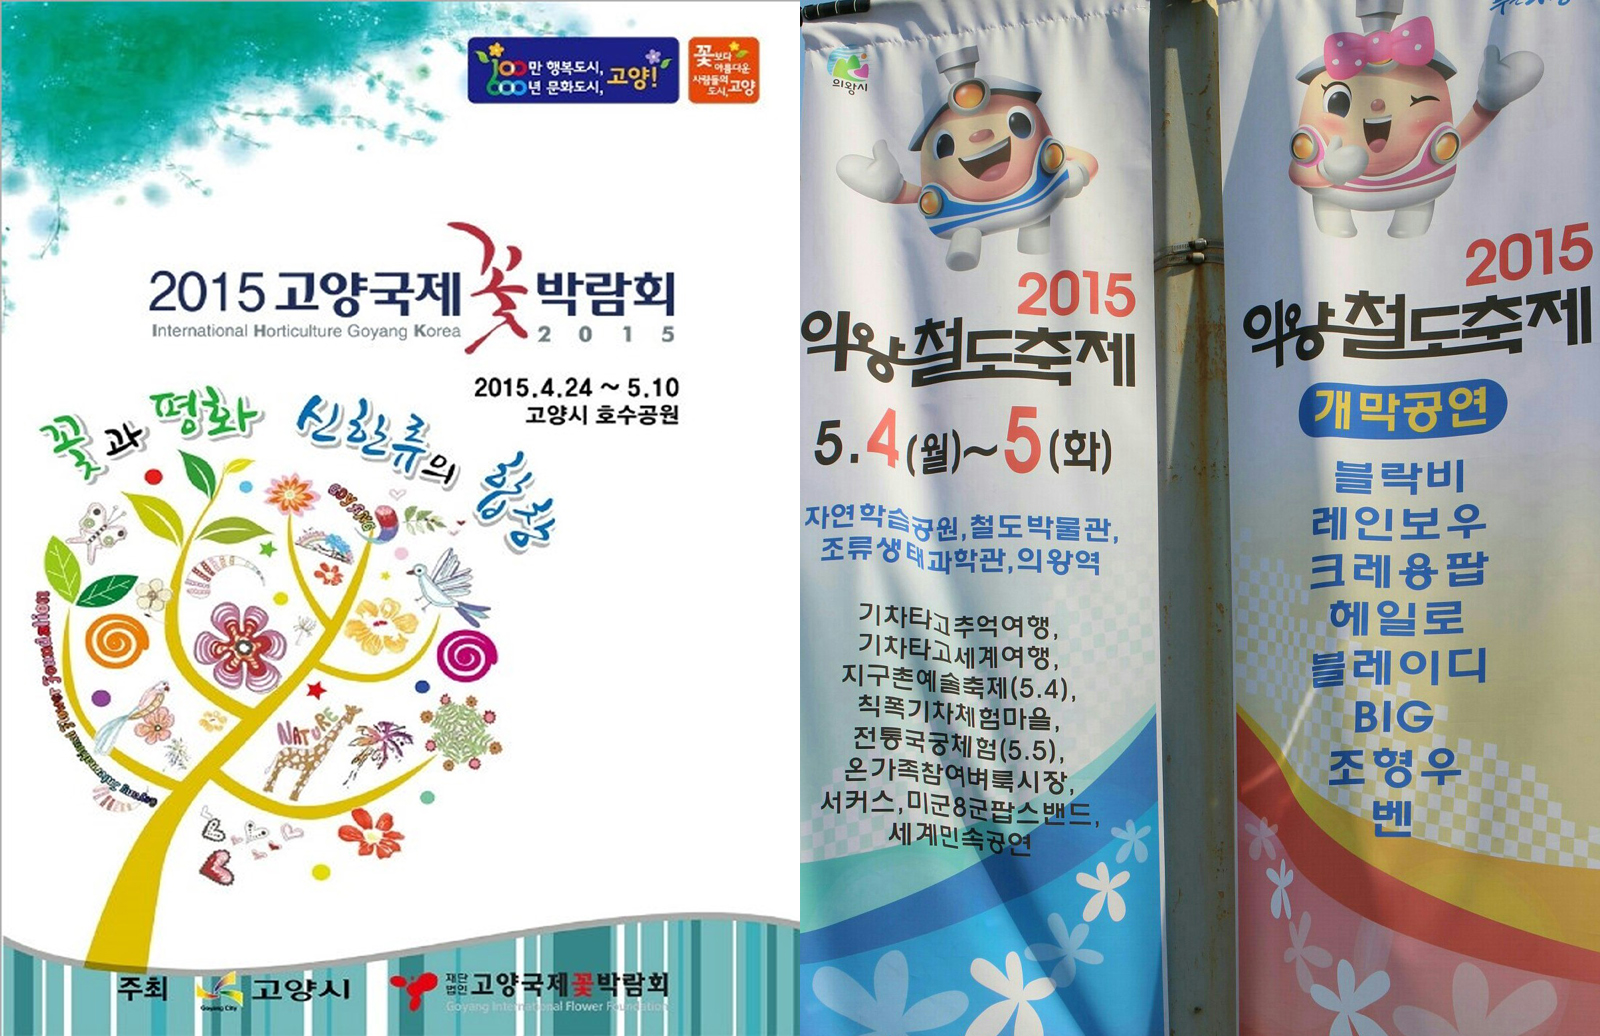 고양국제꽃박람회 포스터(왼쪽, ⓒ 한국관광공사)  의왕 철도축제(오른쪽)